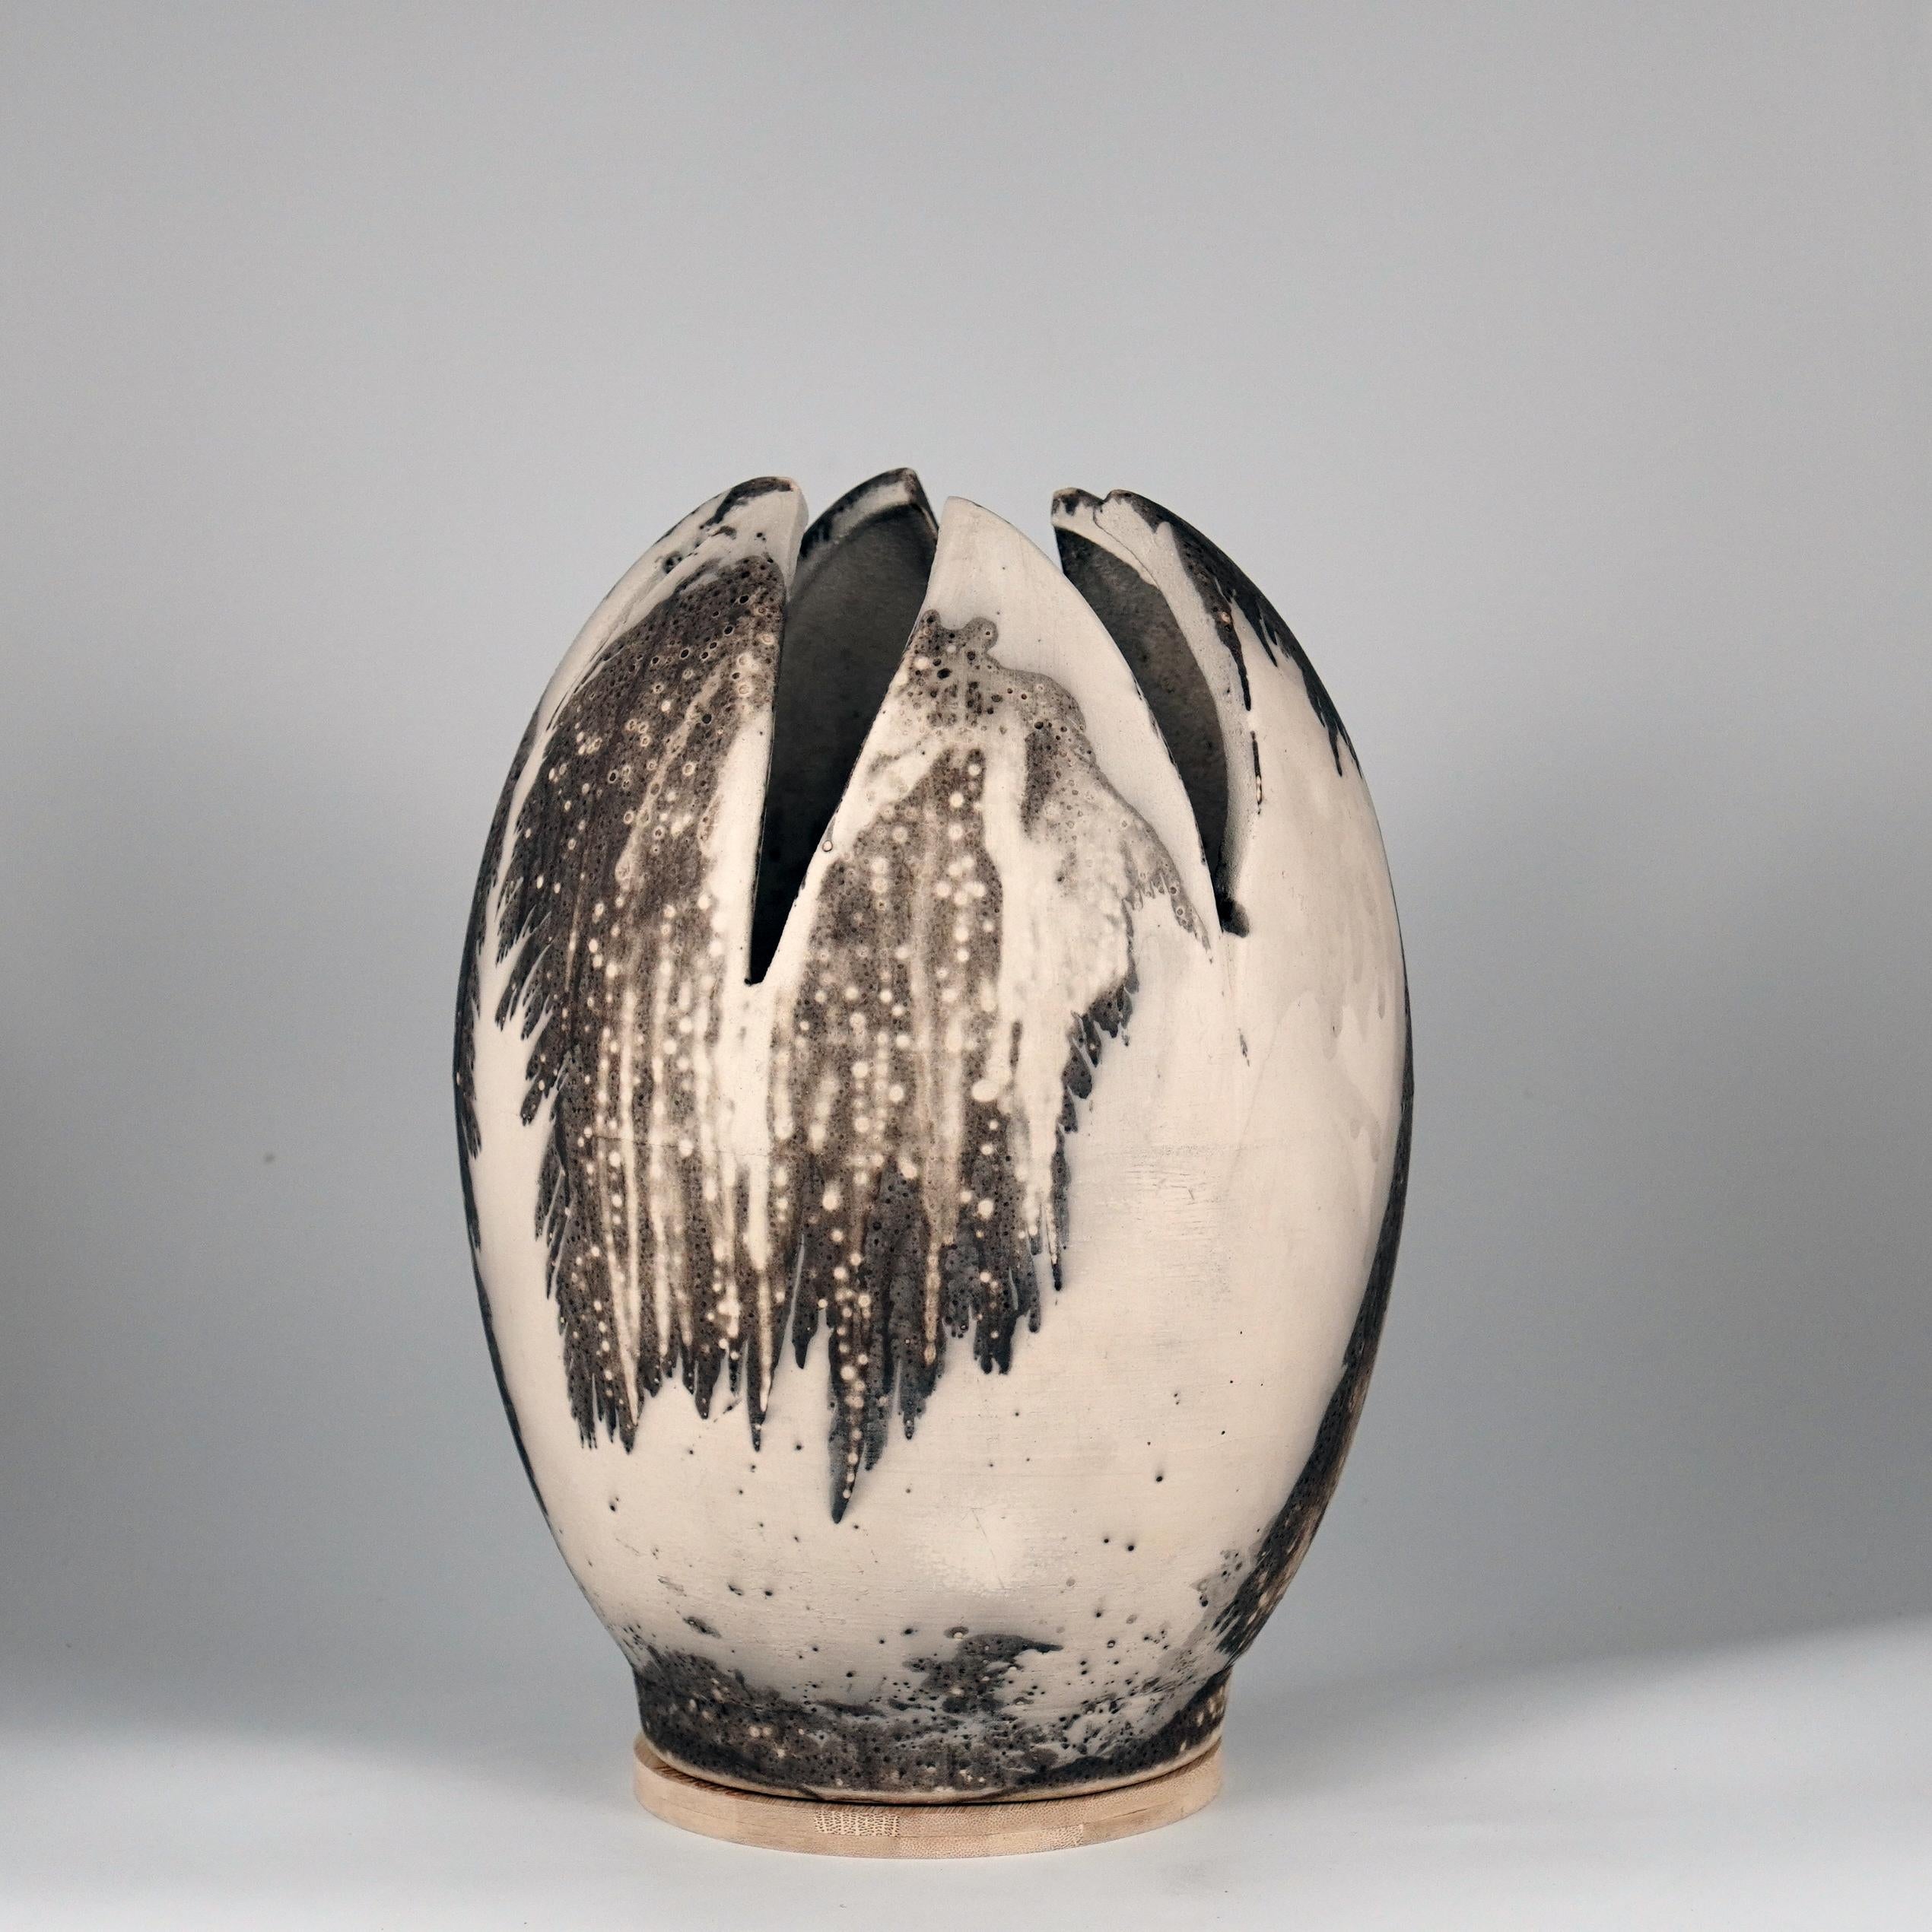 Die Form der RAAQUU Flower Vase ist von der Tulpenblüte inspiriert und verleiht der ovalen Vase mit 6 halben Blütenblättern einen wunderbaren Regenbogenschimmer. Diese Vase erfordert eine präzise Formgebung und ist meine bisher komplizierteste